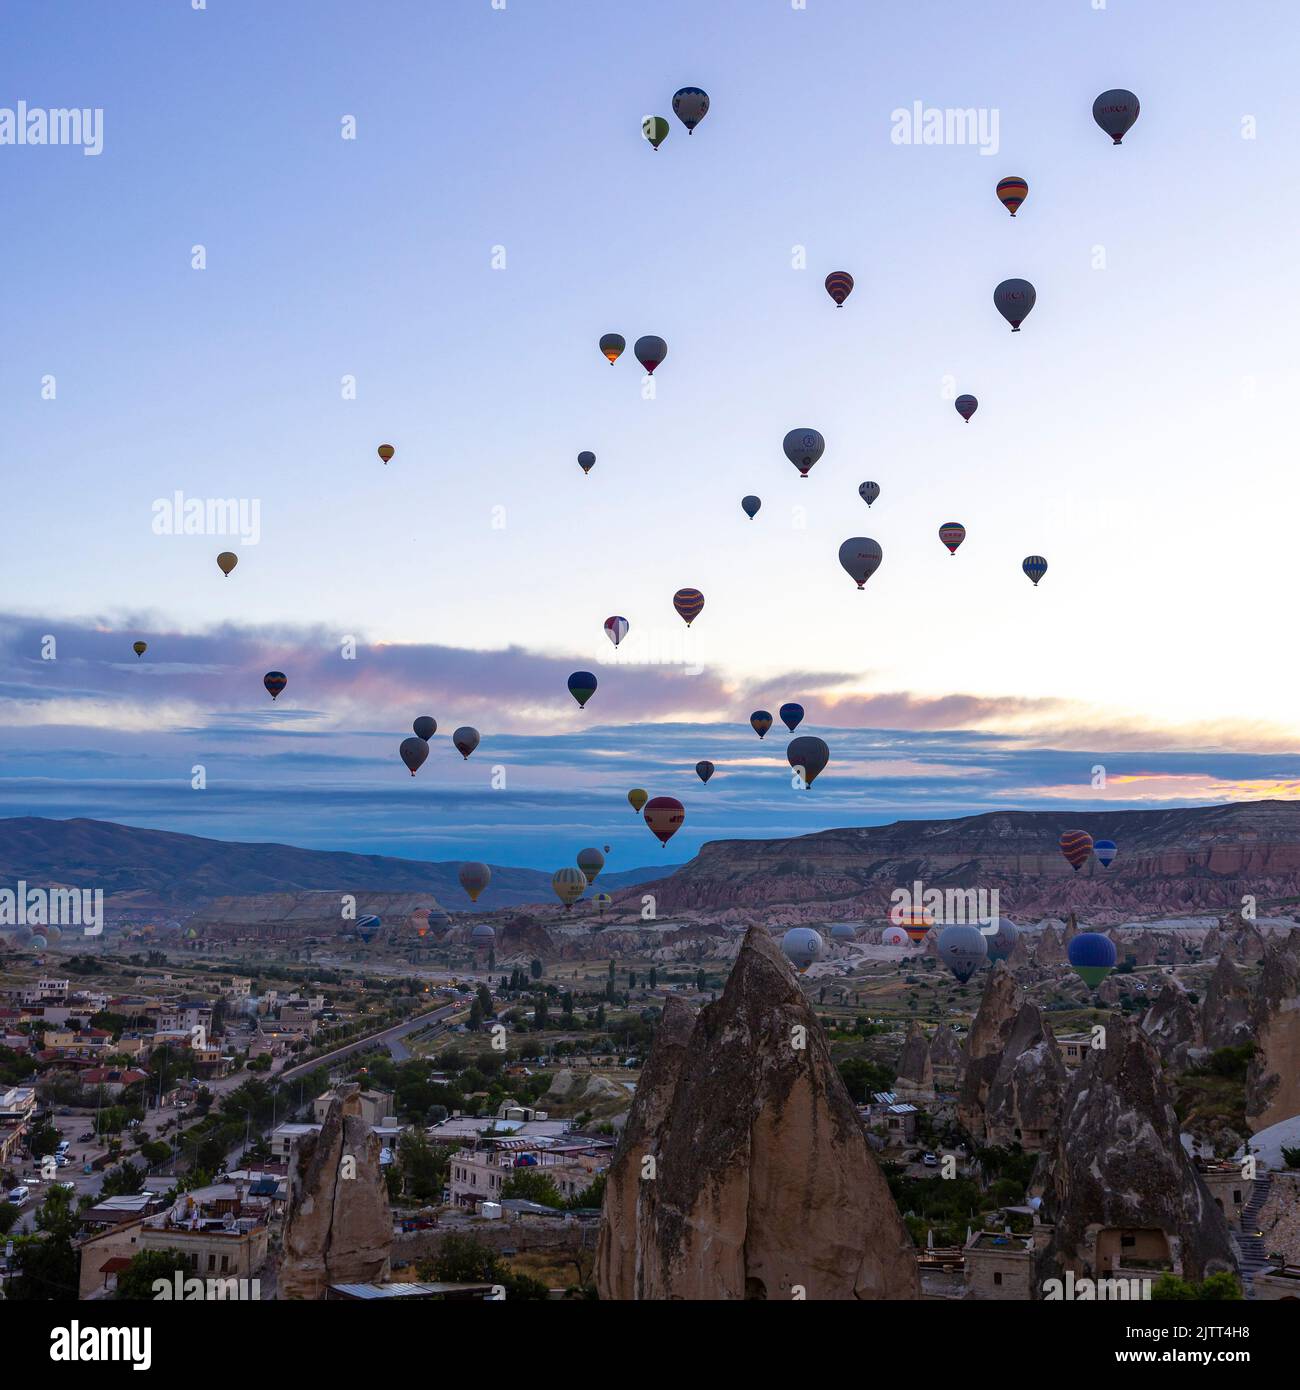 GOREME/TURQUÍA - 27 de junio de 2022: Varios globos de aire caliente vuelan al amanecer en el cielo de goreme Foto de stock